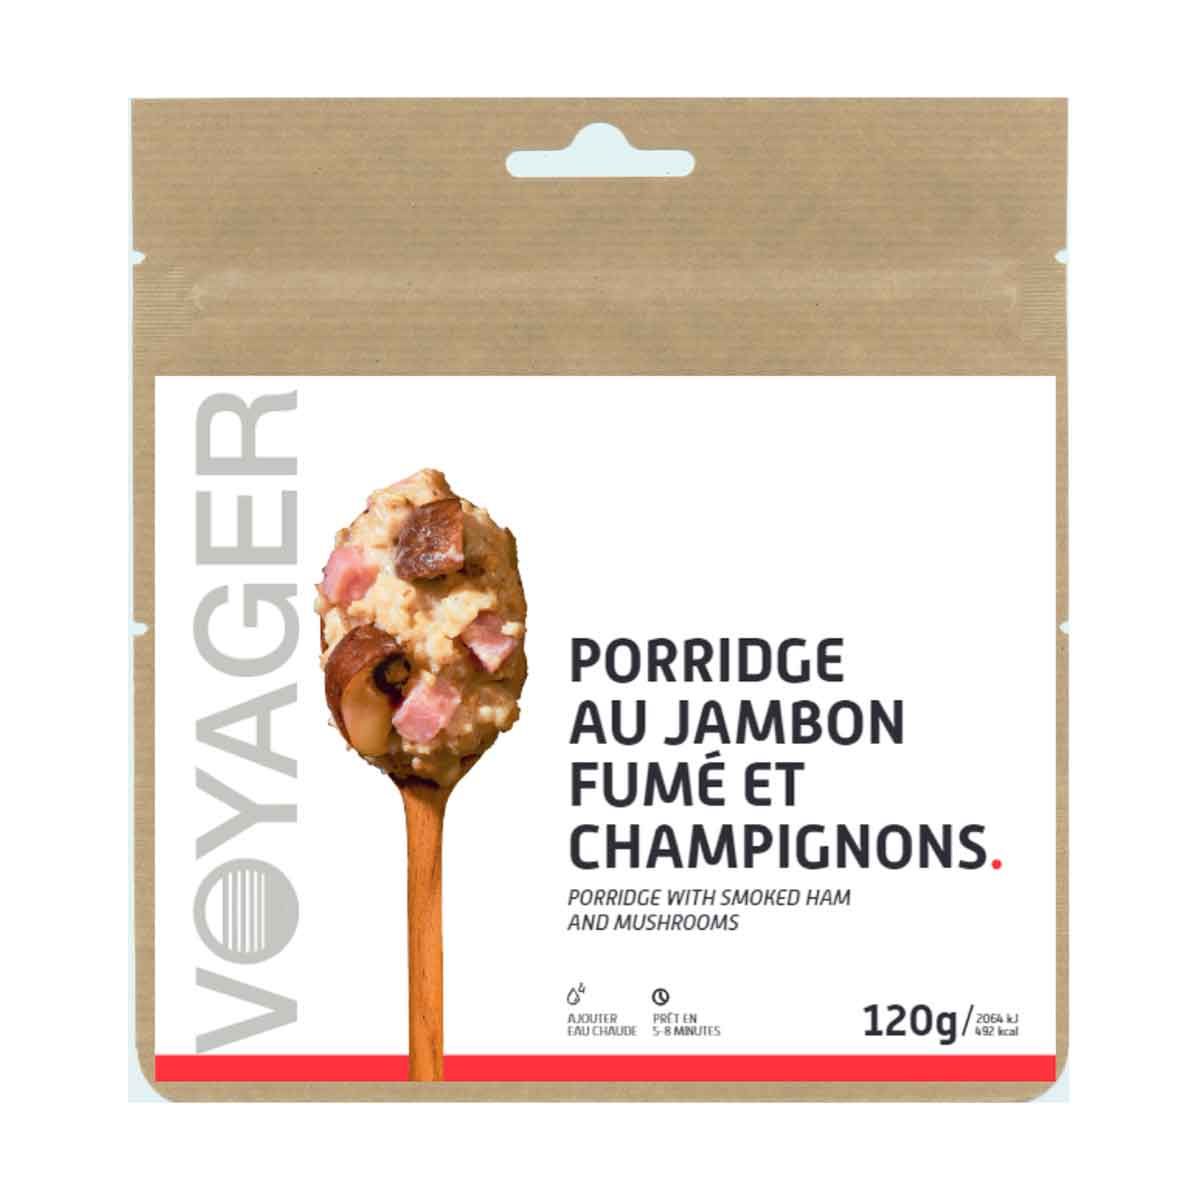 Porridge with smoked ham and mushrooms